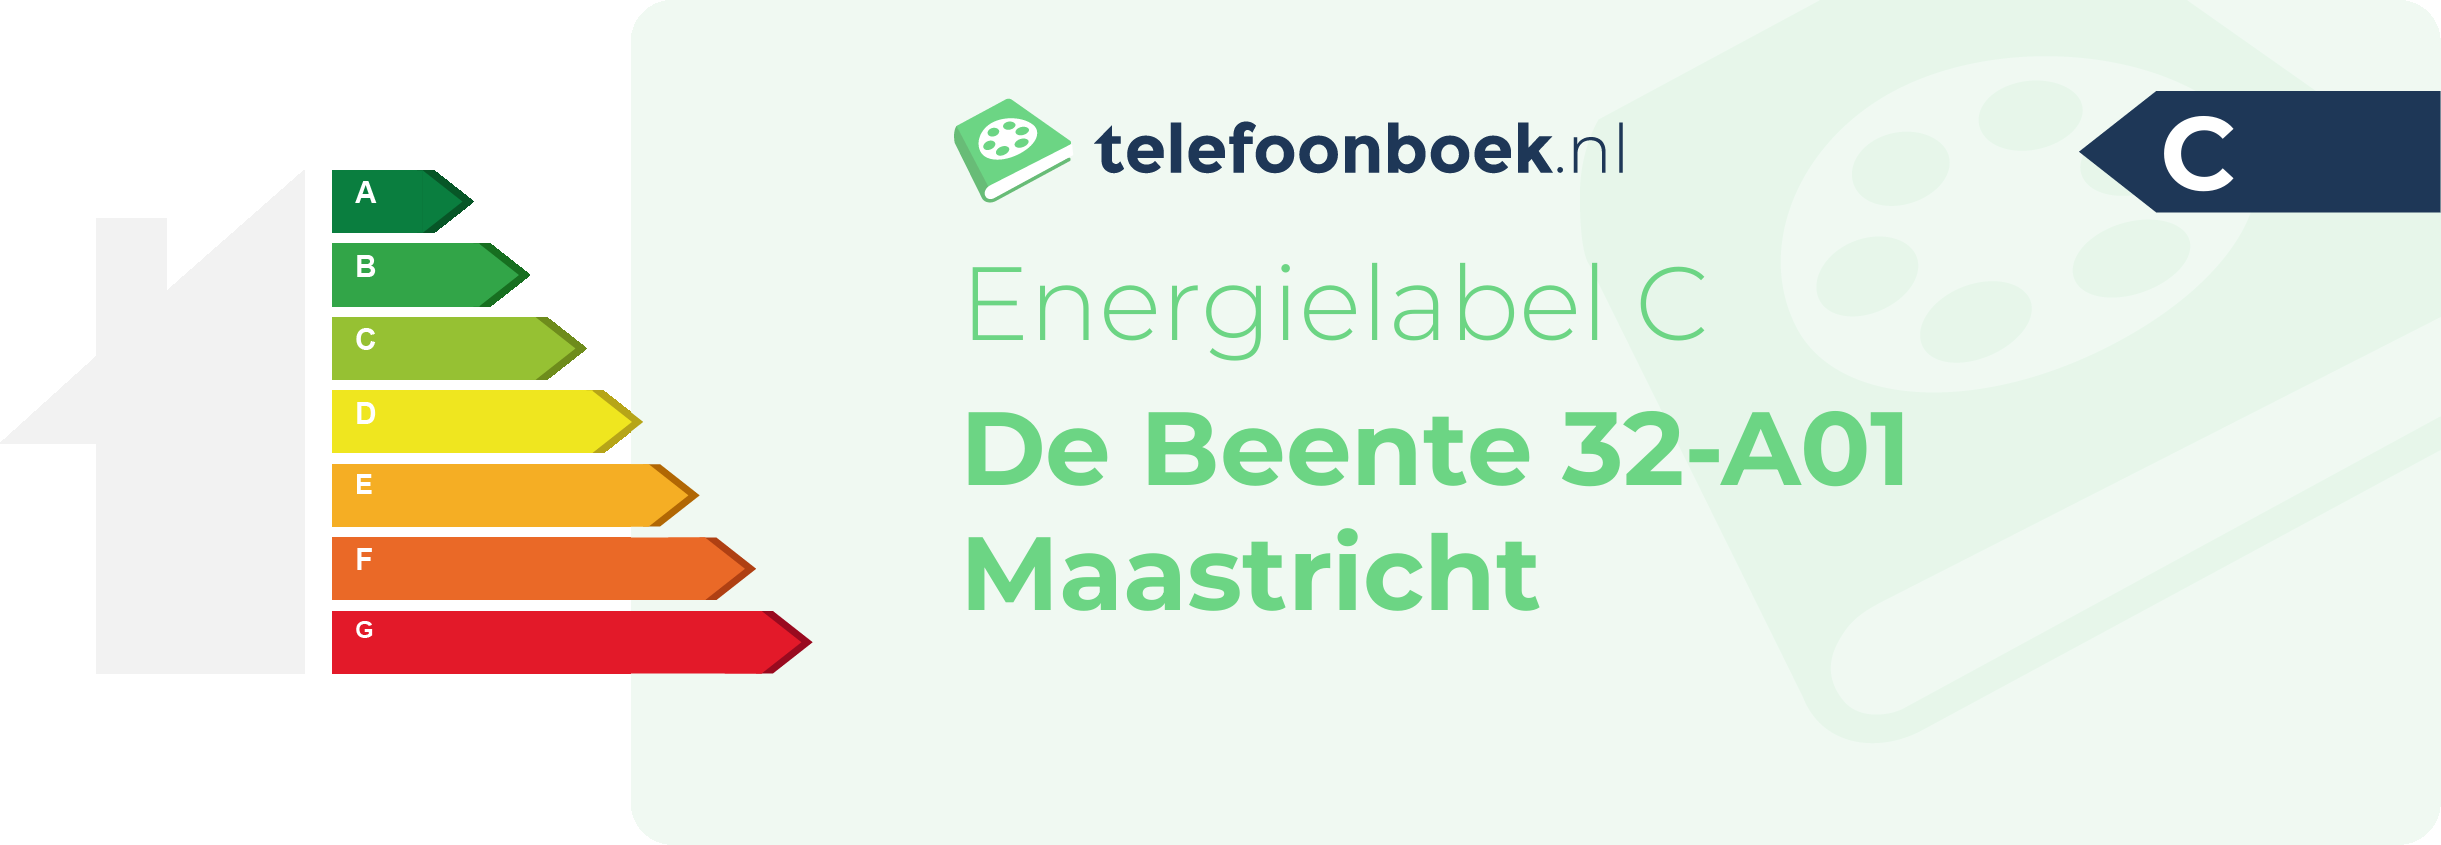 Energielabel De Beente 32-A01 Maastricht